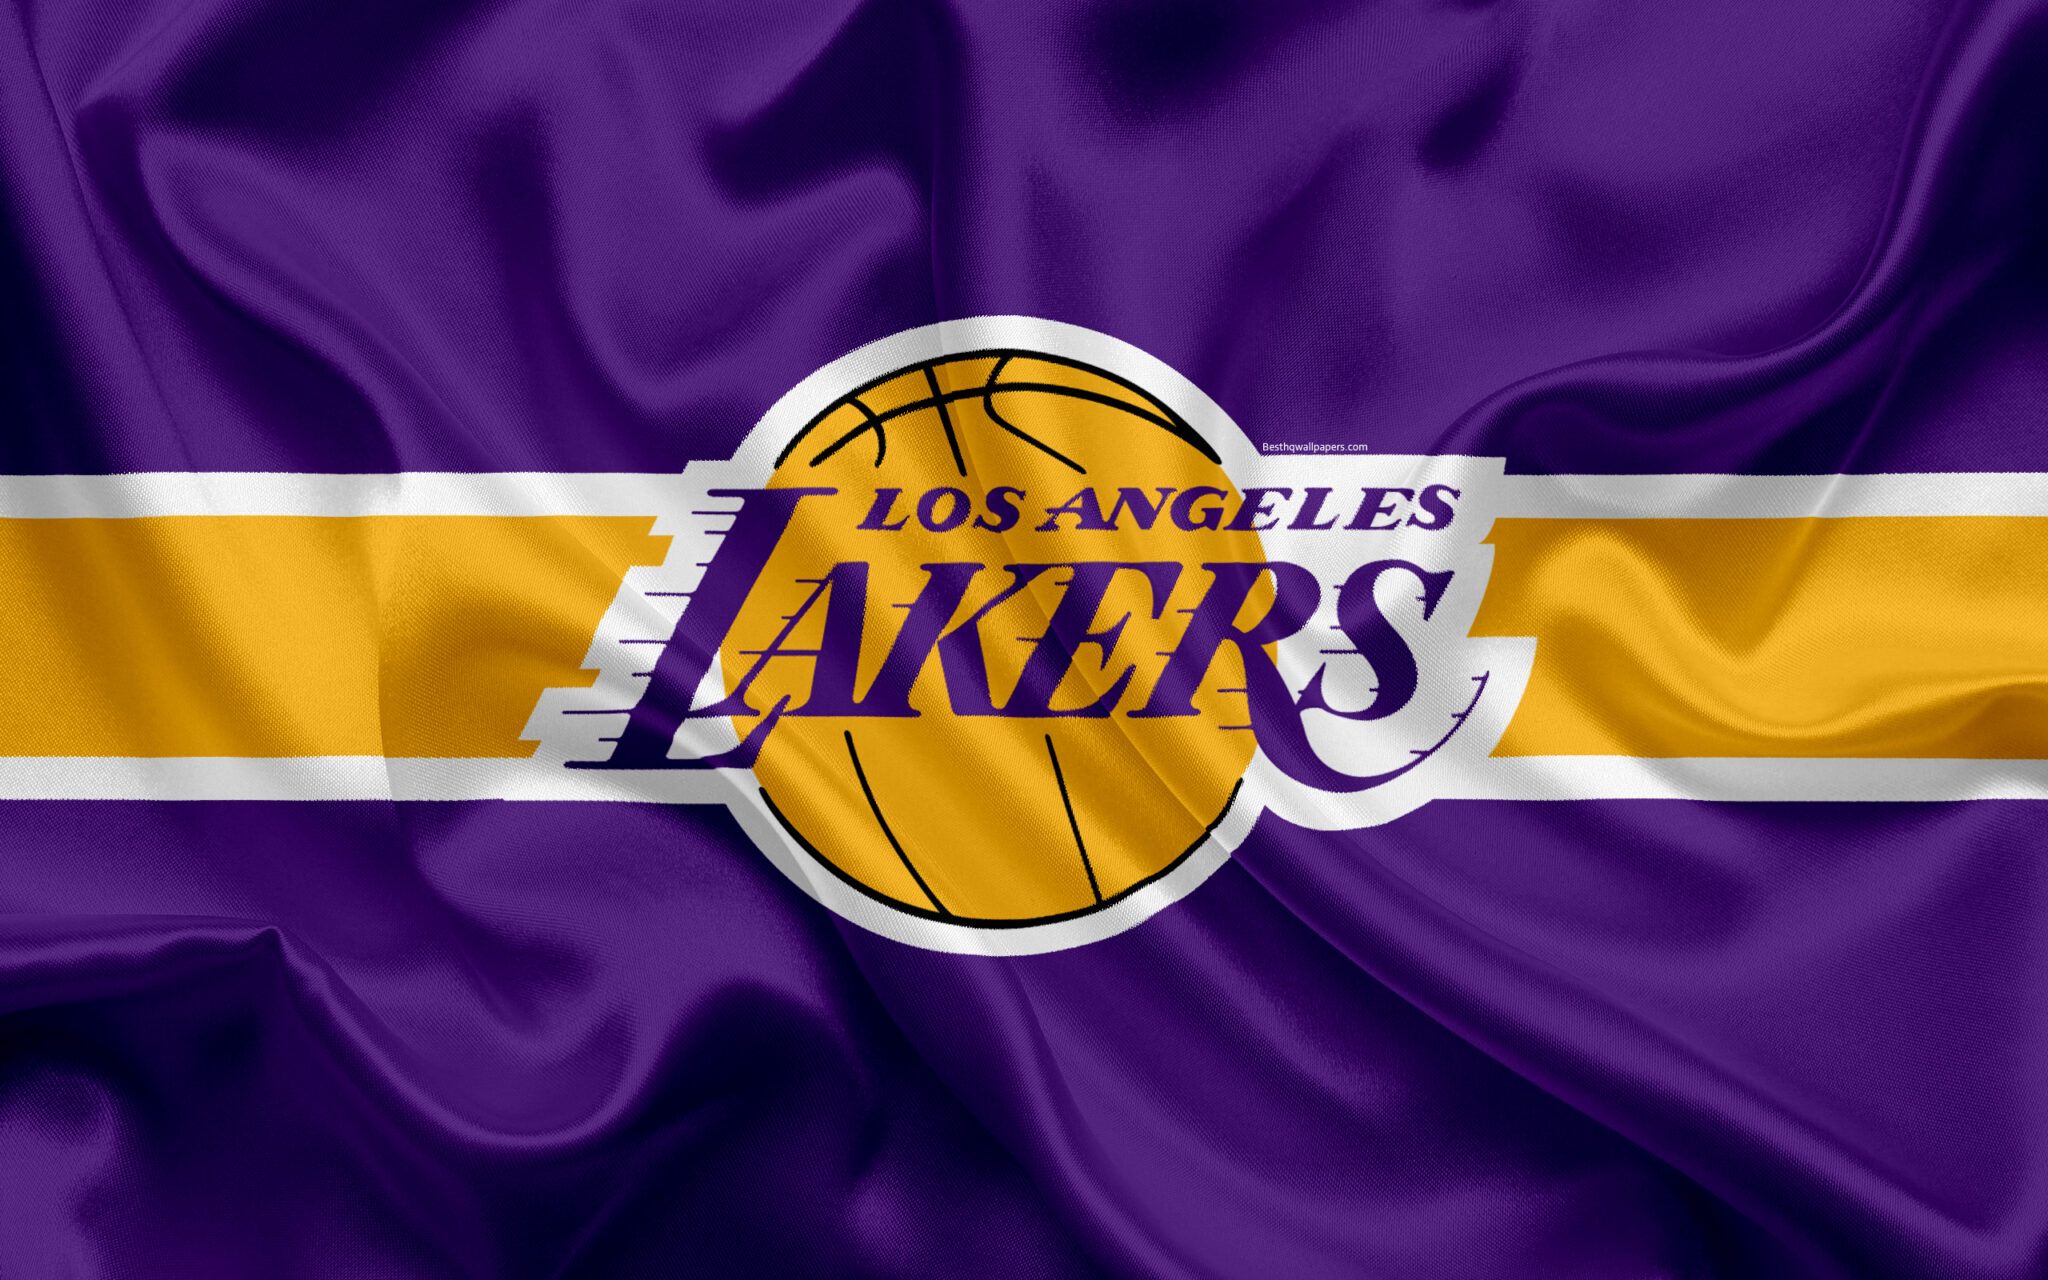 La lakers. Лос-Анджелес Лейкерс. Лос-Анджелес Лейкерс игроки «Лос-Анджелес Лейкерс». Los Angeles Lakers логотип. Баскетбольный клуб Лос-Анджелес Лейкерс лого.